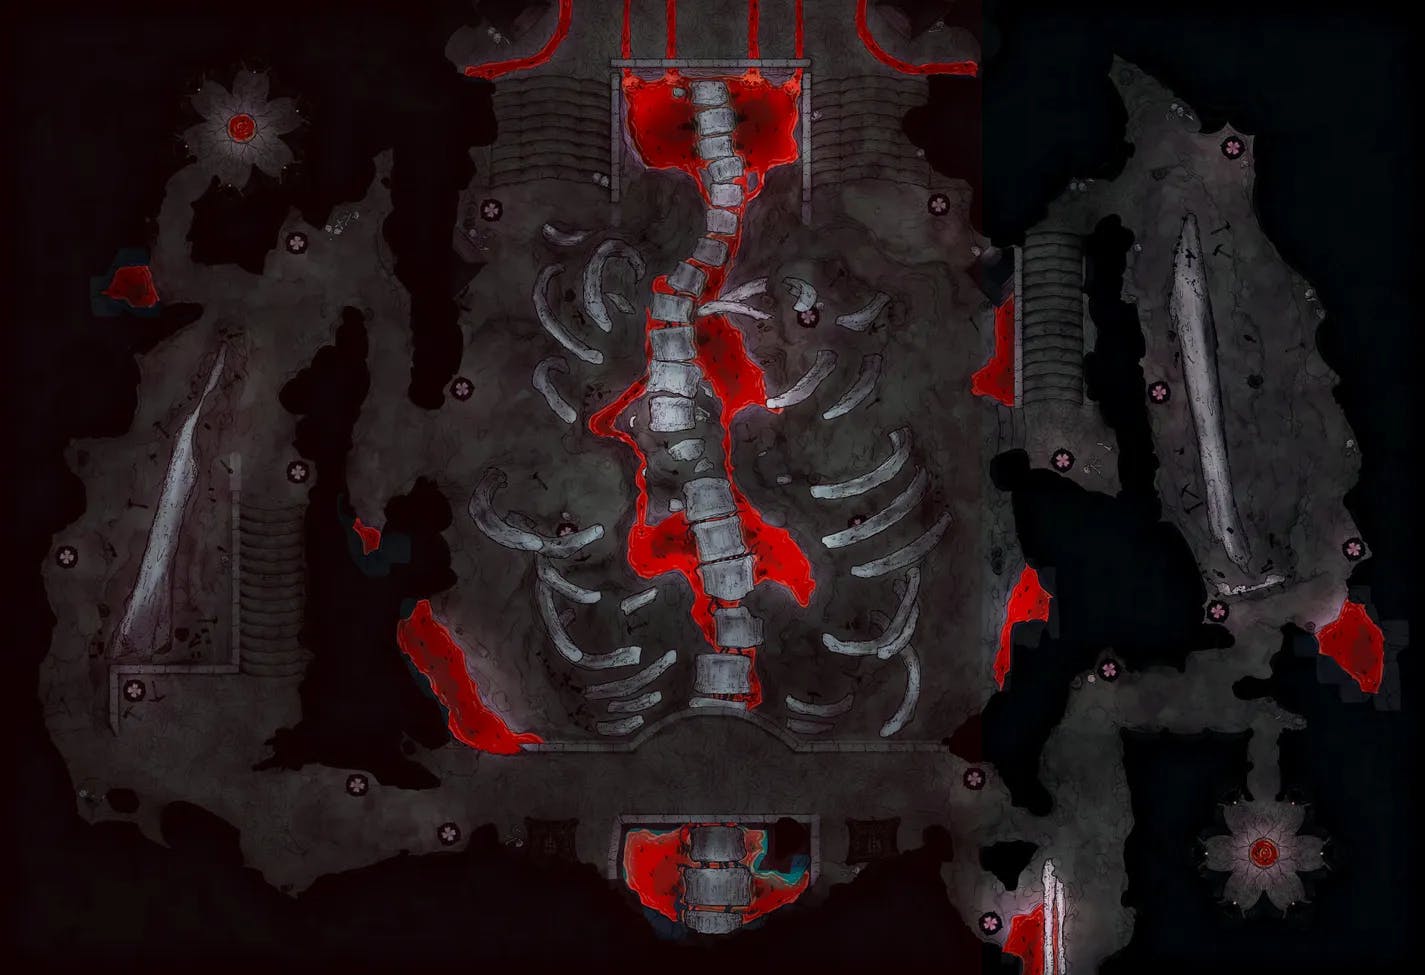 Elder Brain Spine Mine map, Gore variant